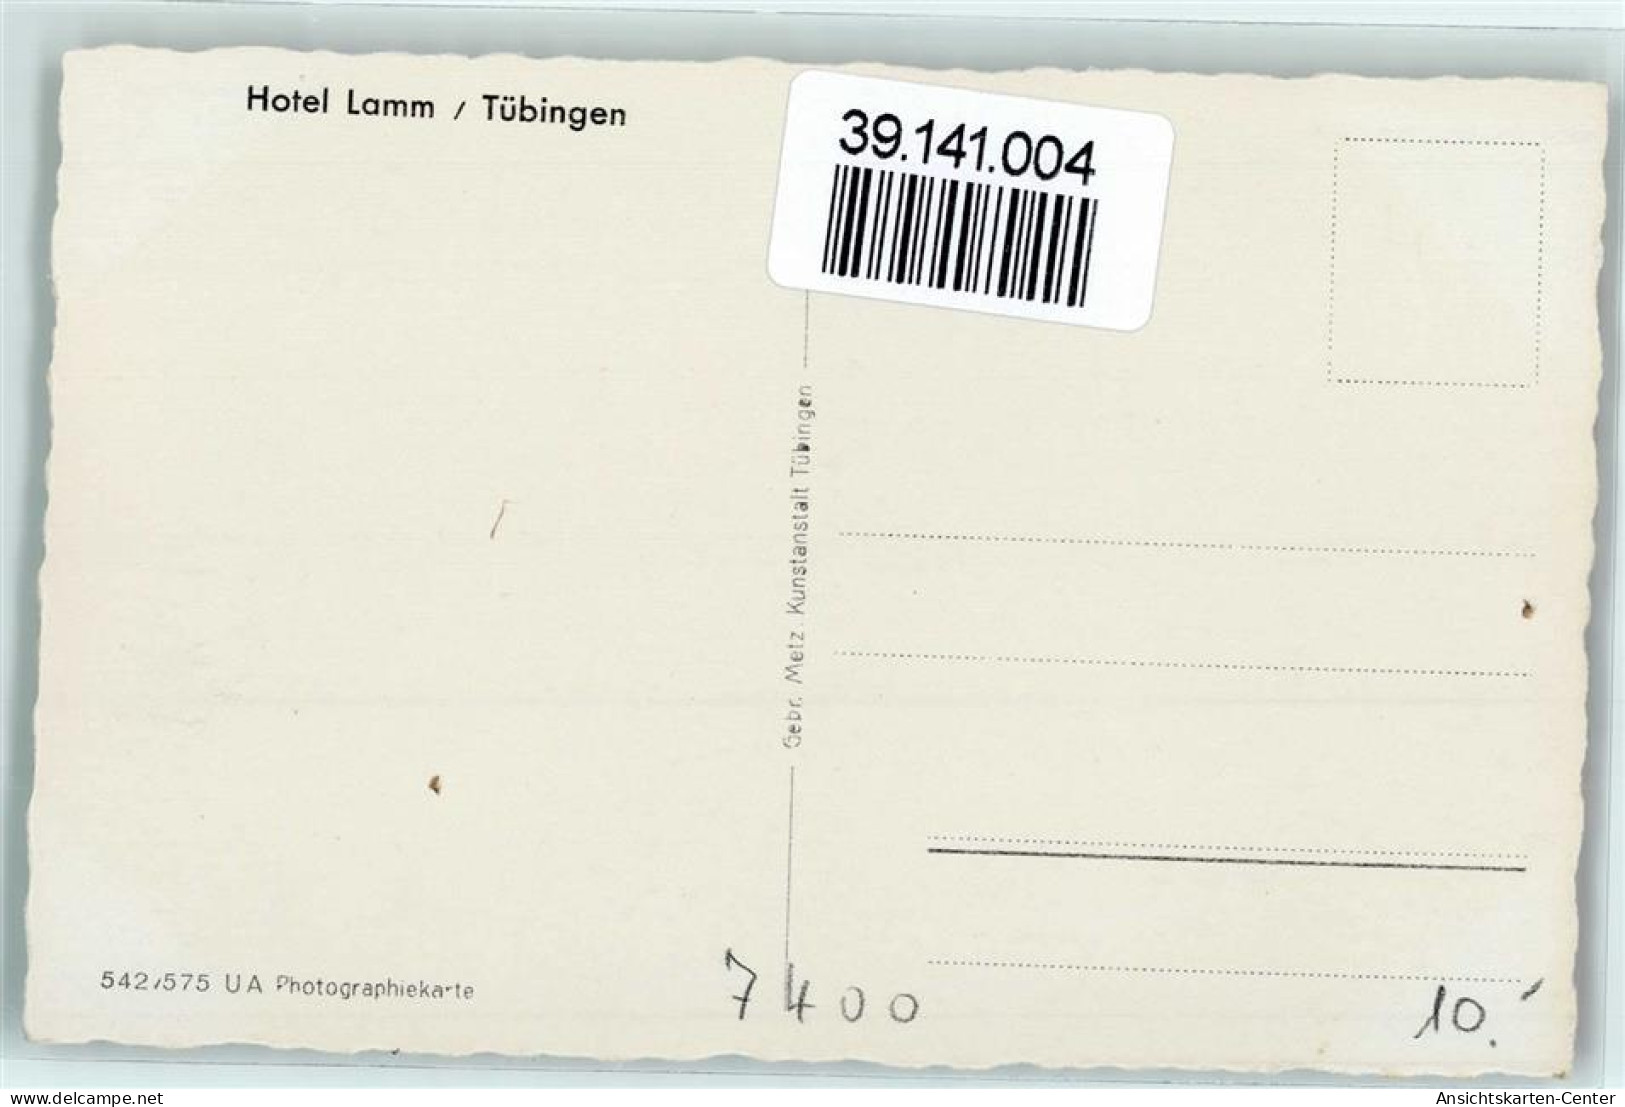 39141004 - Tuebingen - Tuebingen